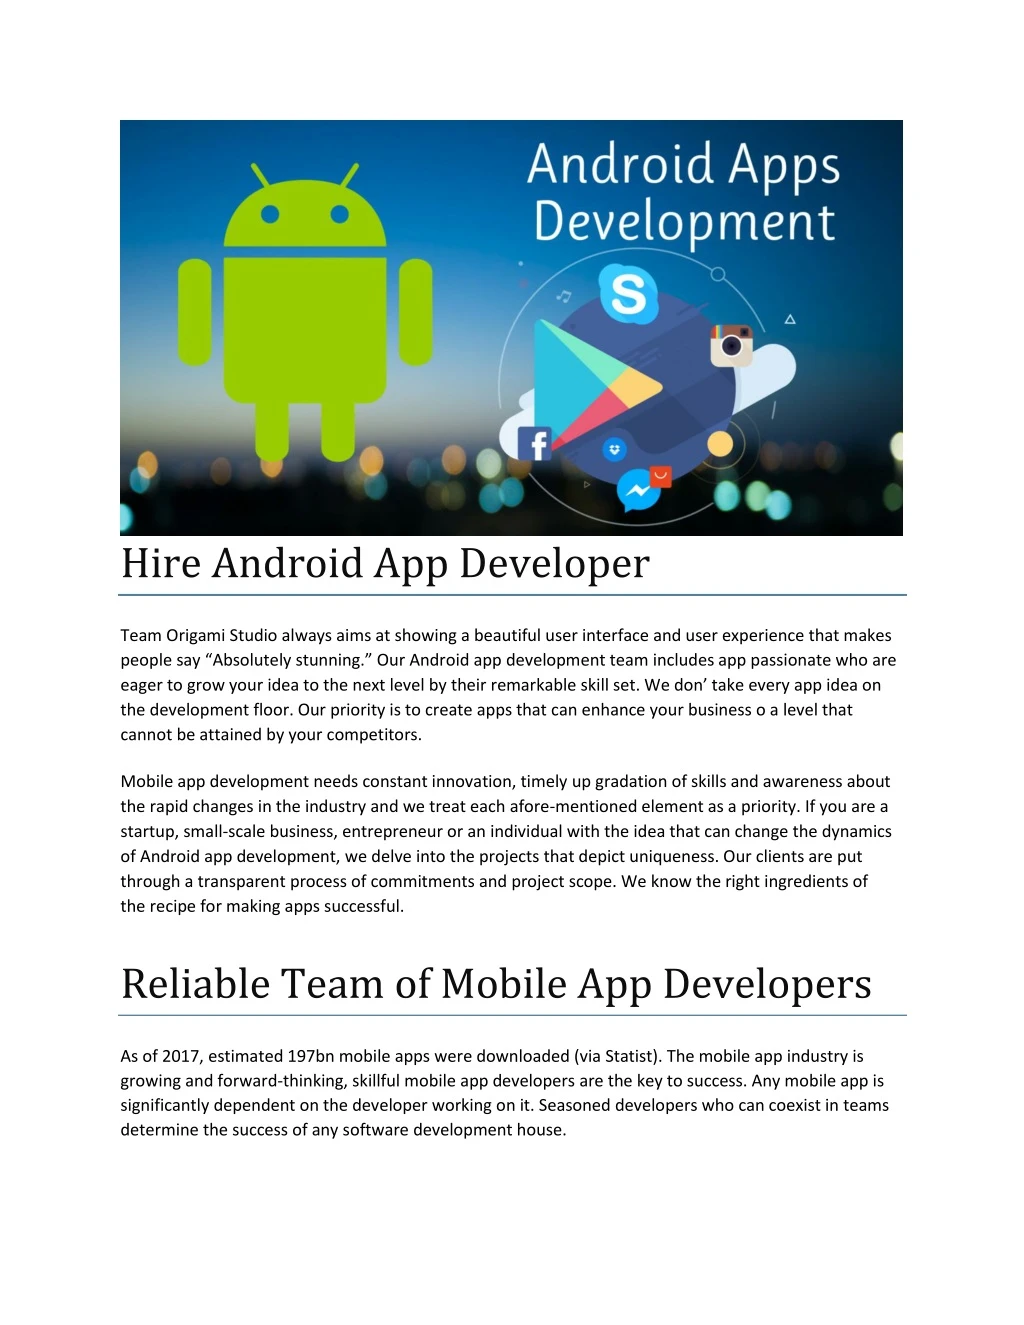 hire android app developer team origami studio